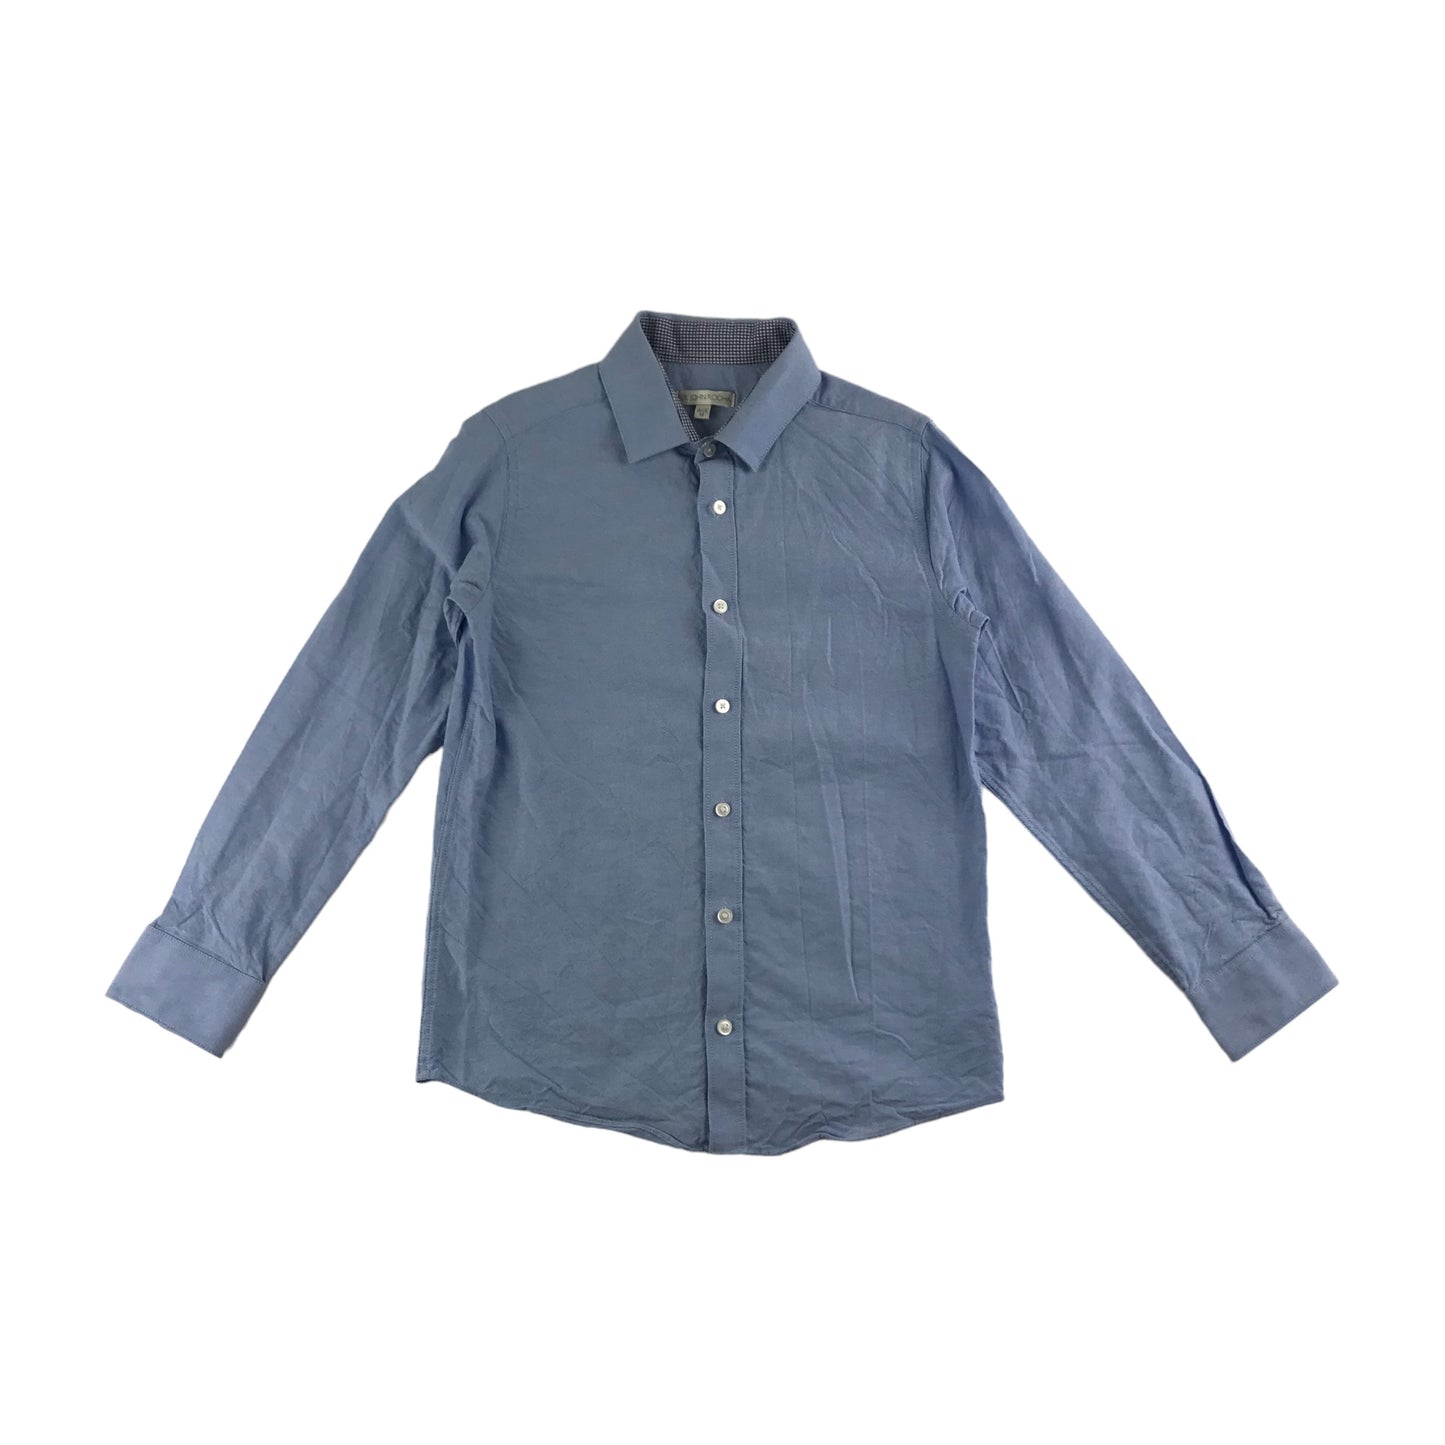 John Rocha Shirt Age 10 Light Blue Smart Button Up Cotton